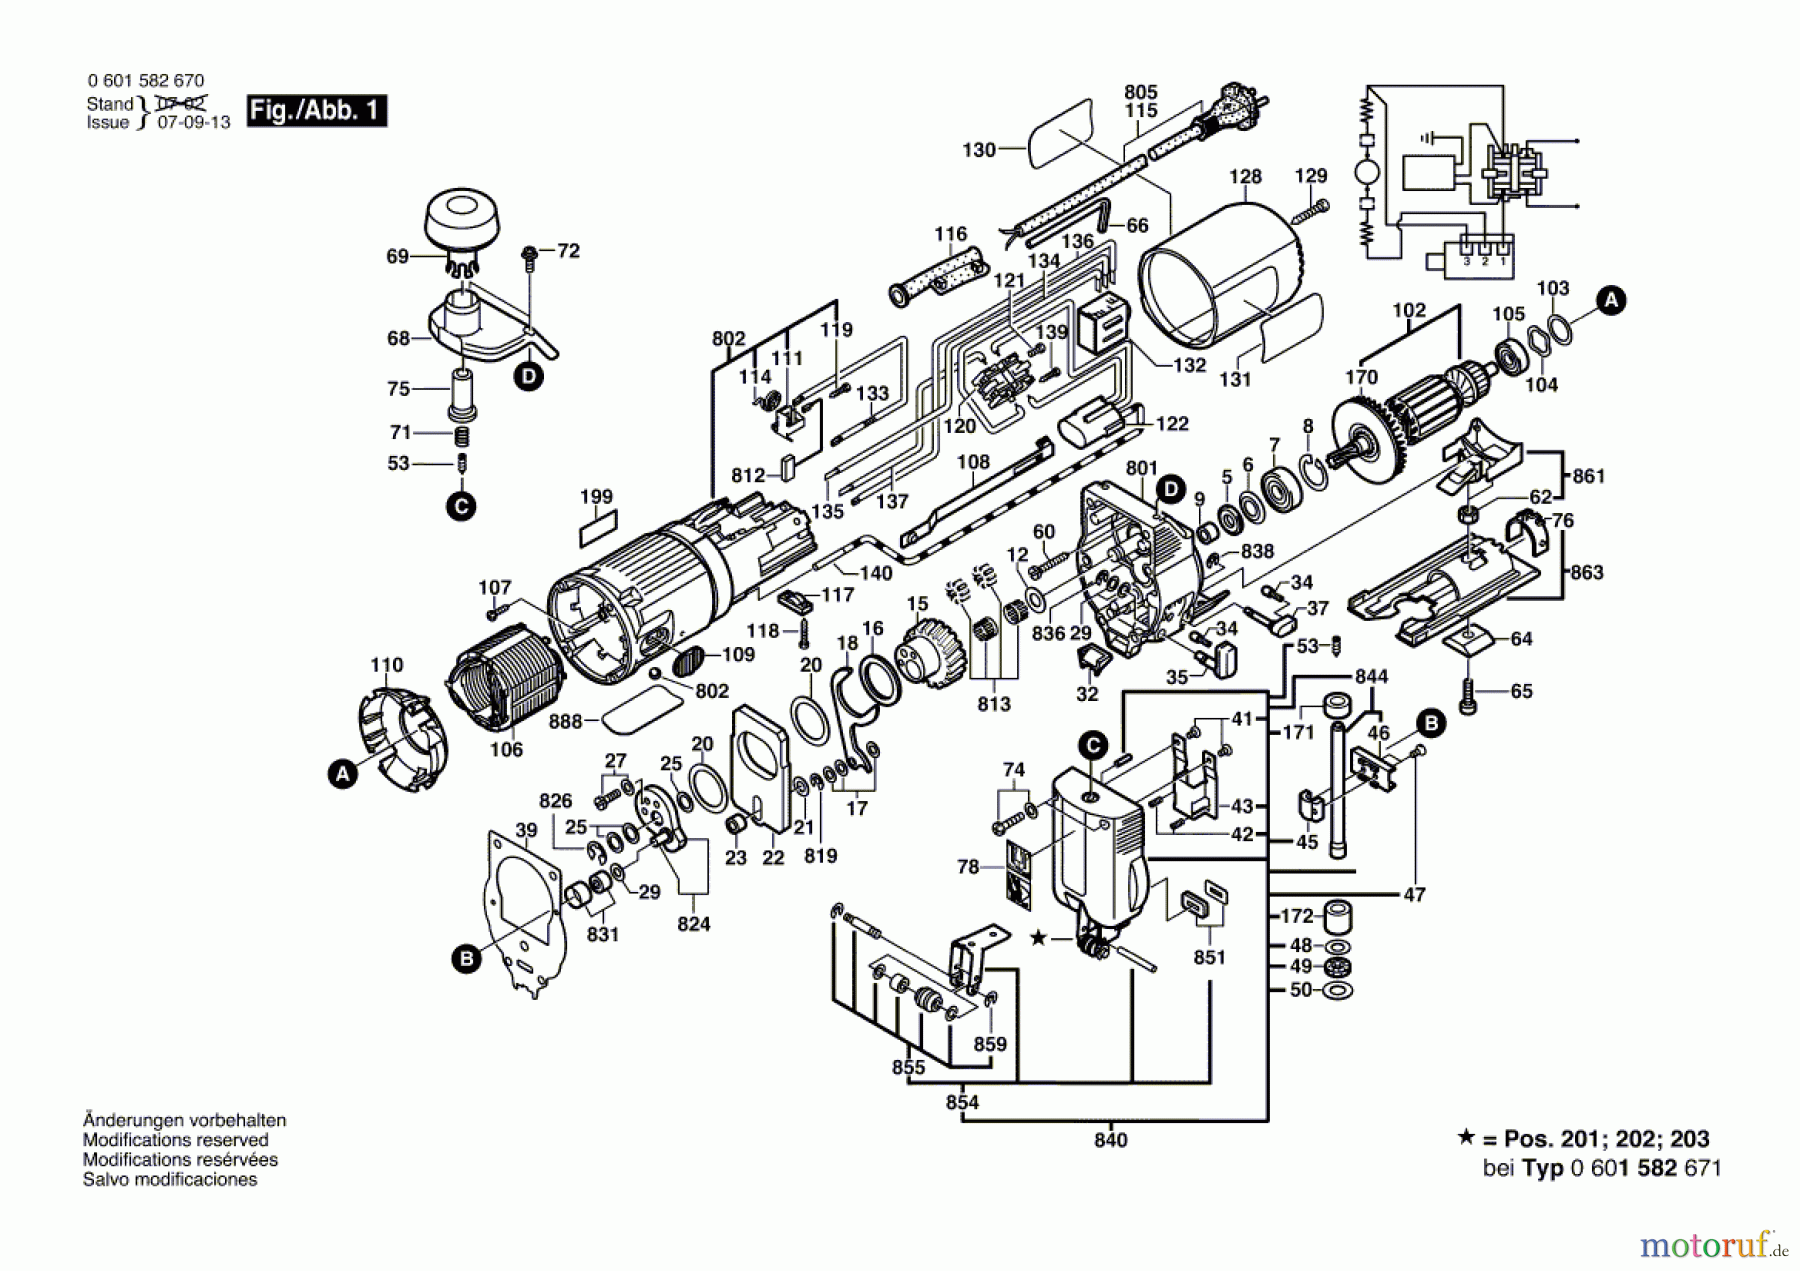  Bosch Werkzeug Pendelstichsäge STP 60 E Seite 1